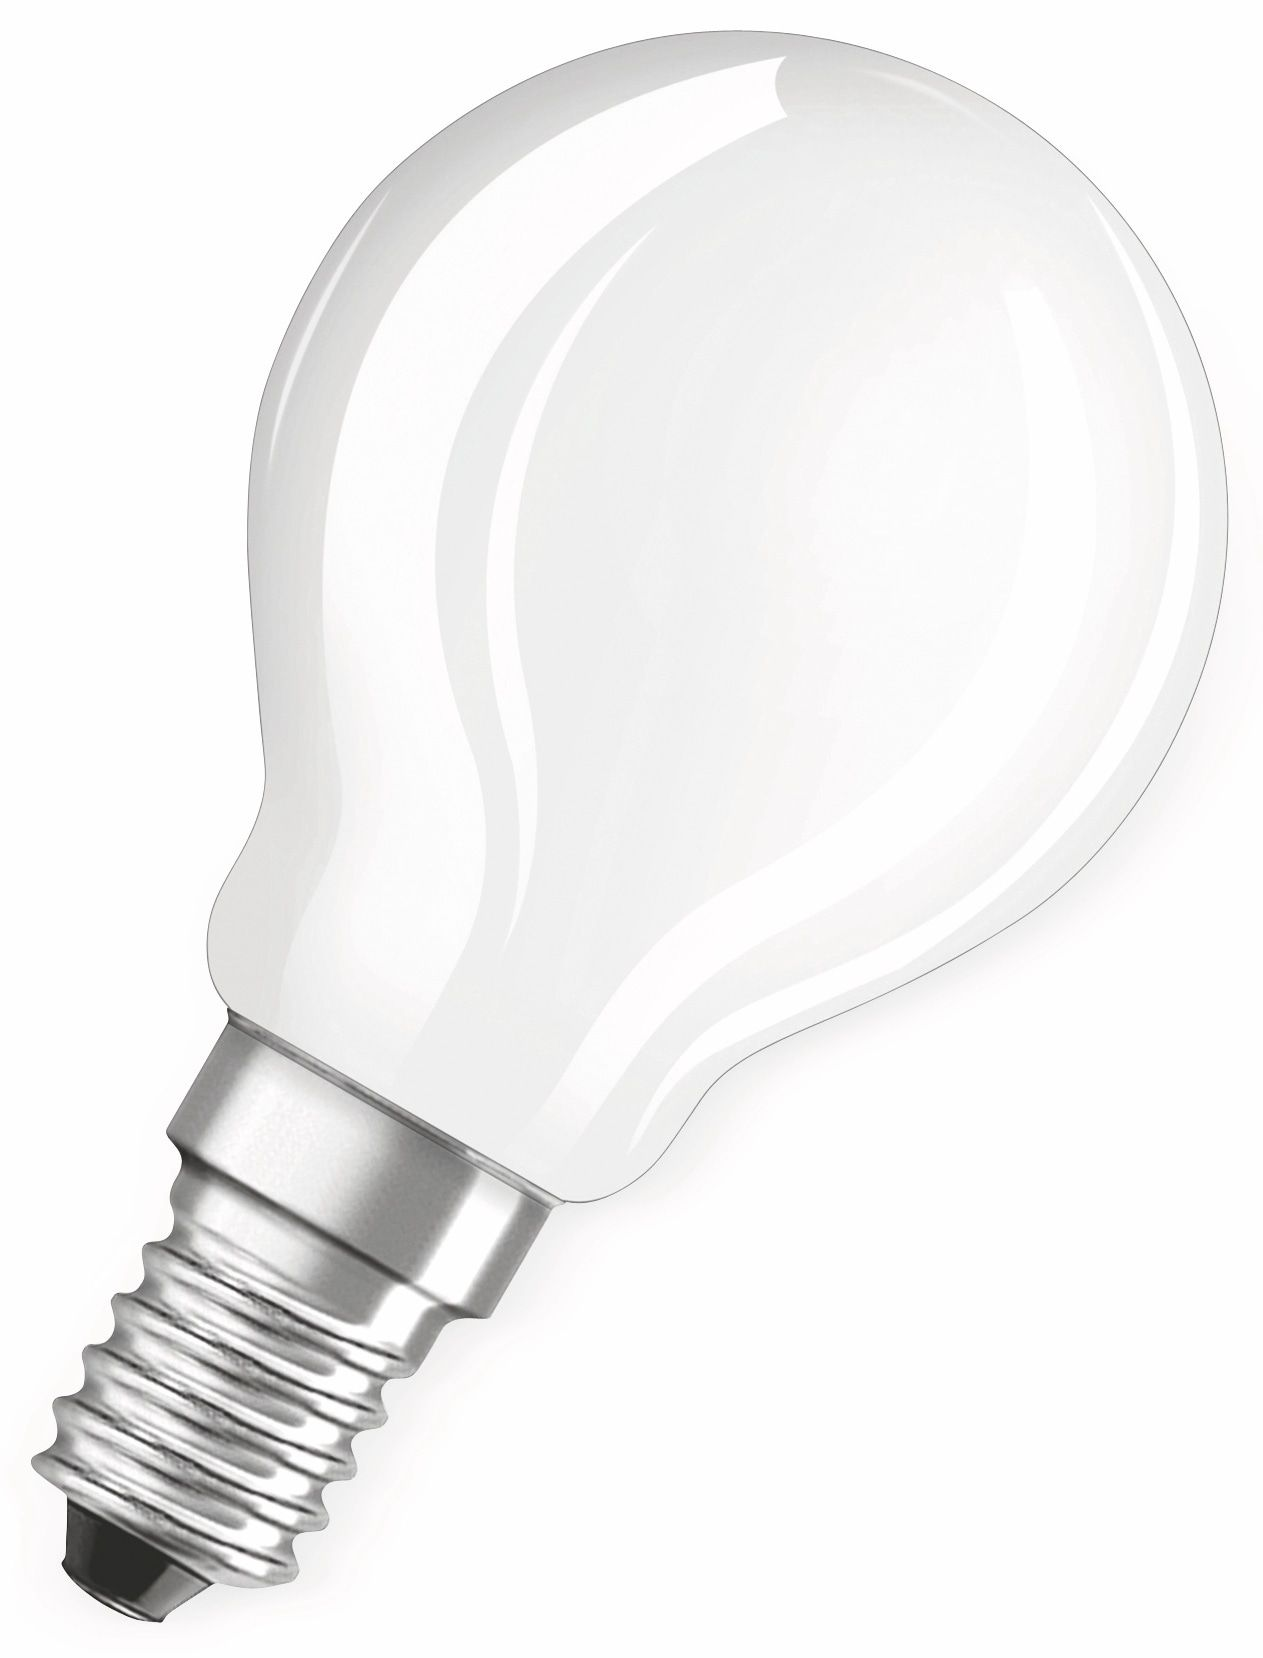 LED Warmweiß LED Lampe CLASSIC Lumen OSRAM  470 BASE P